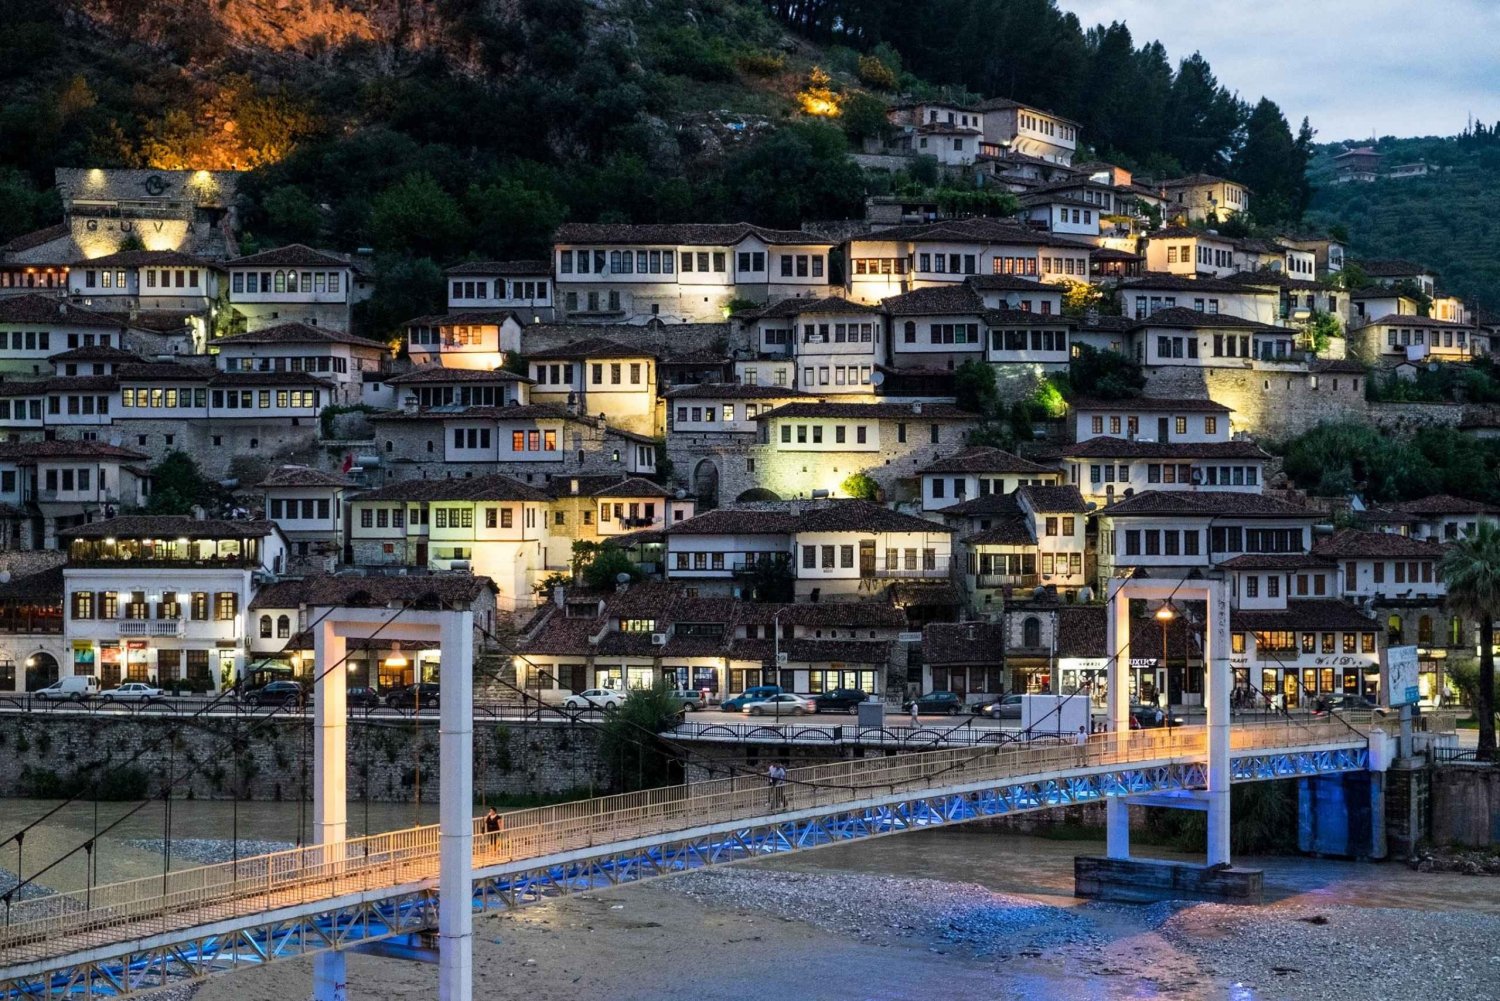 Visite Berat em uma viagem de um dia saindo de Saranda